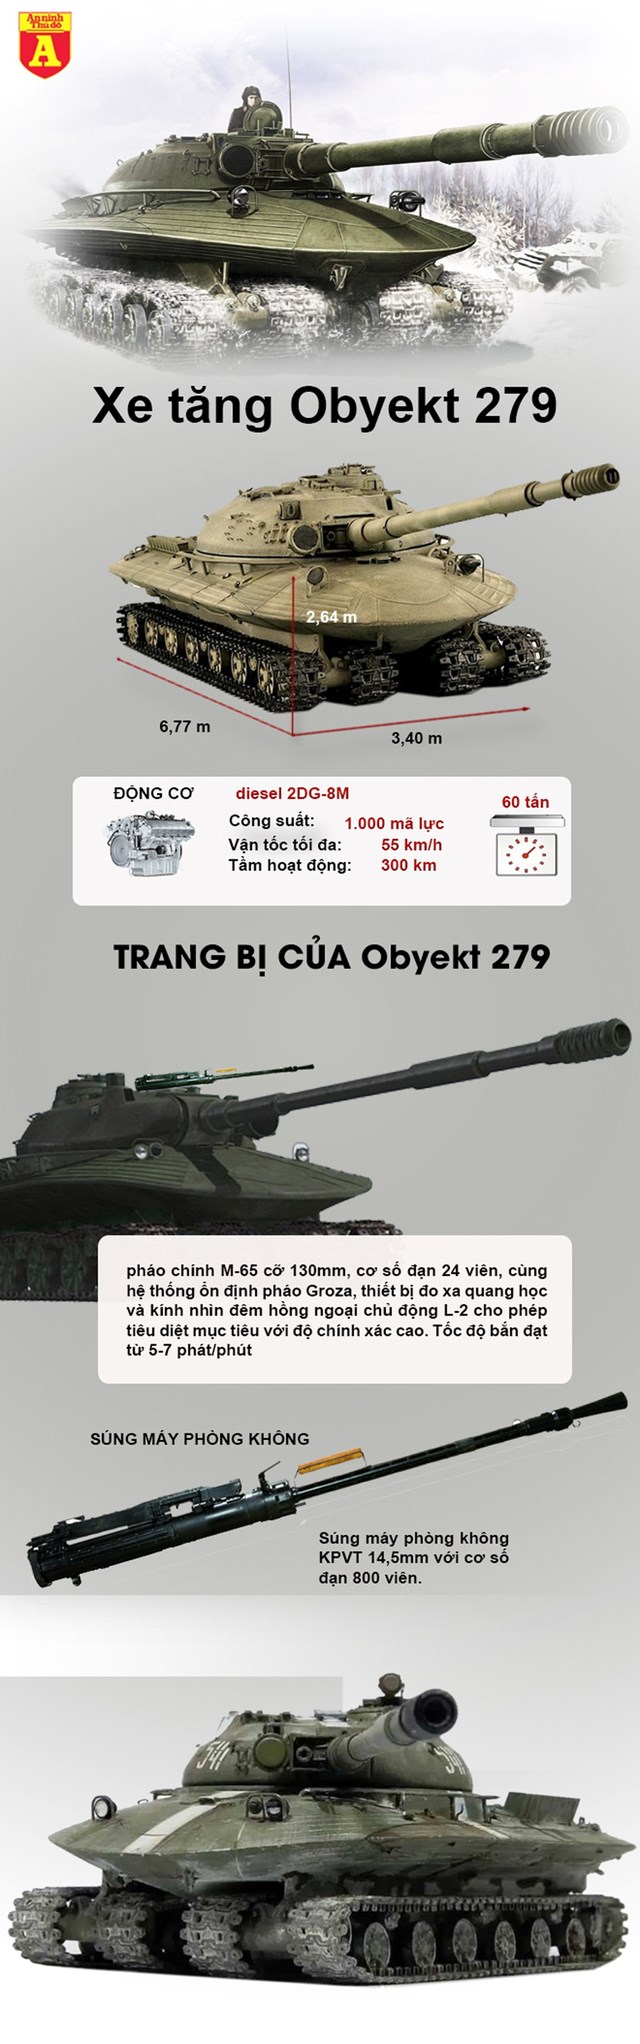 [Infographic] Nhìn lại siêu tăng chống chọi với vũ khí hạt nhân của Liên Xô - Ảnh 1